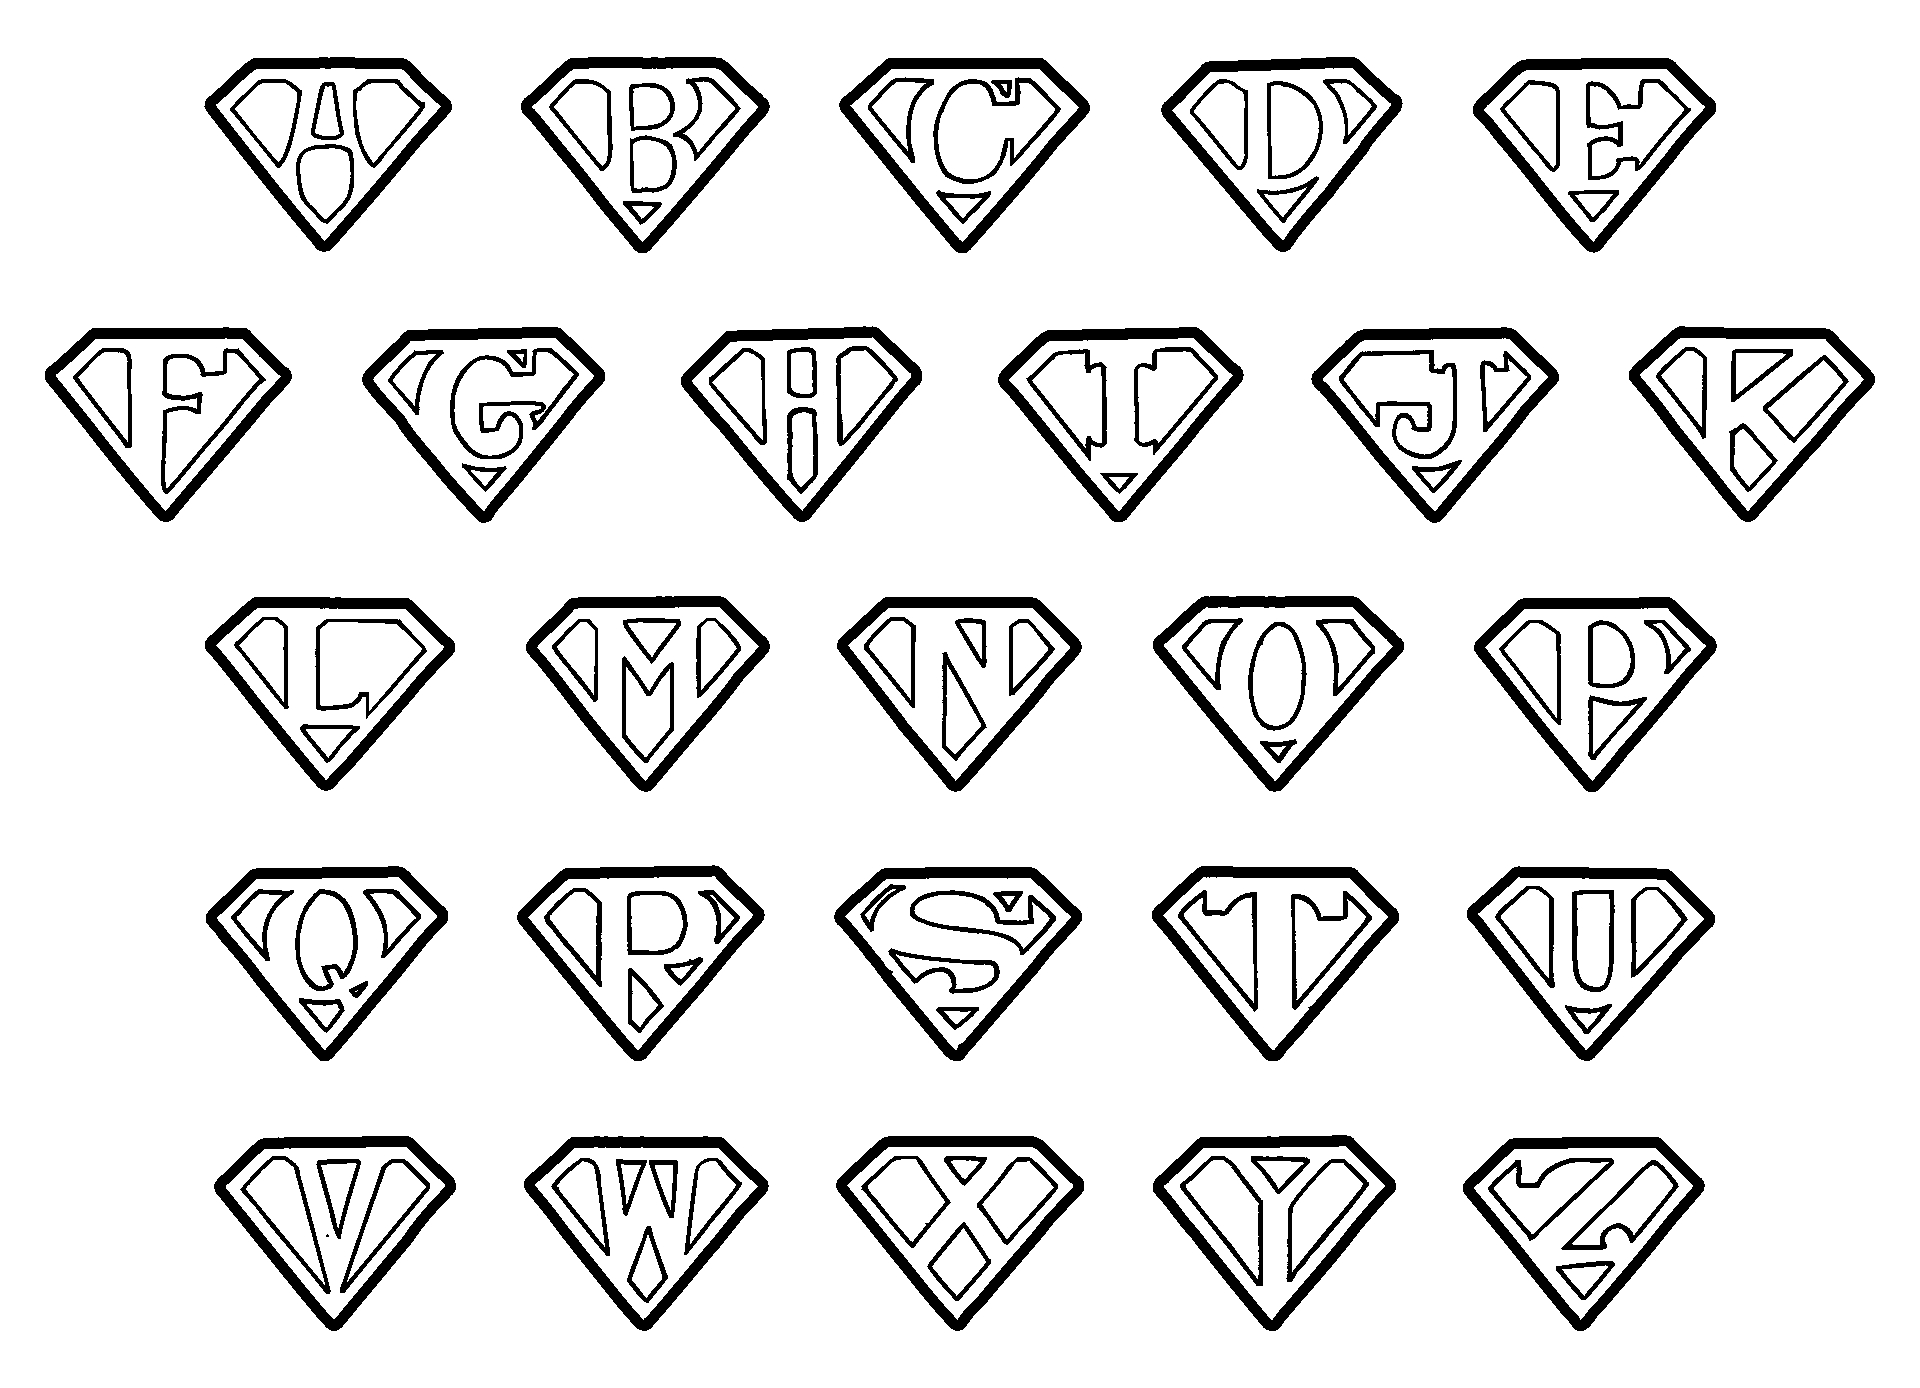 Printable Super Heroes Logos